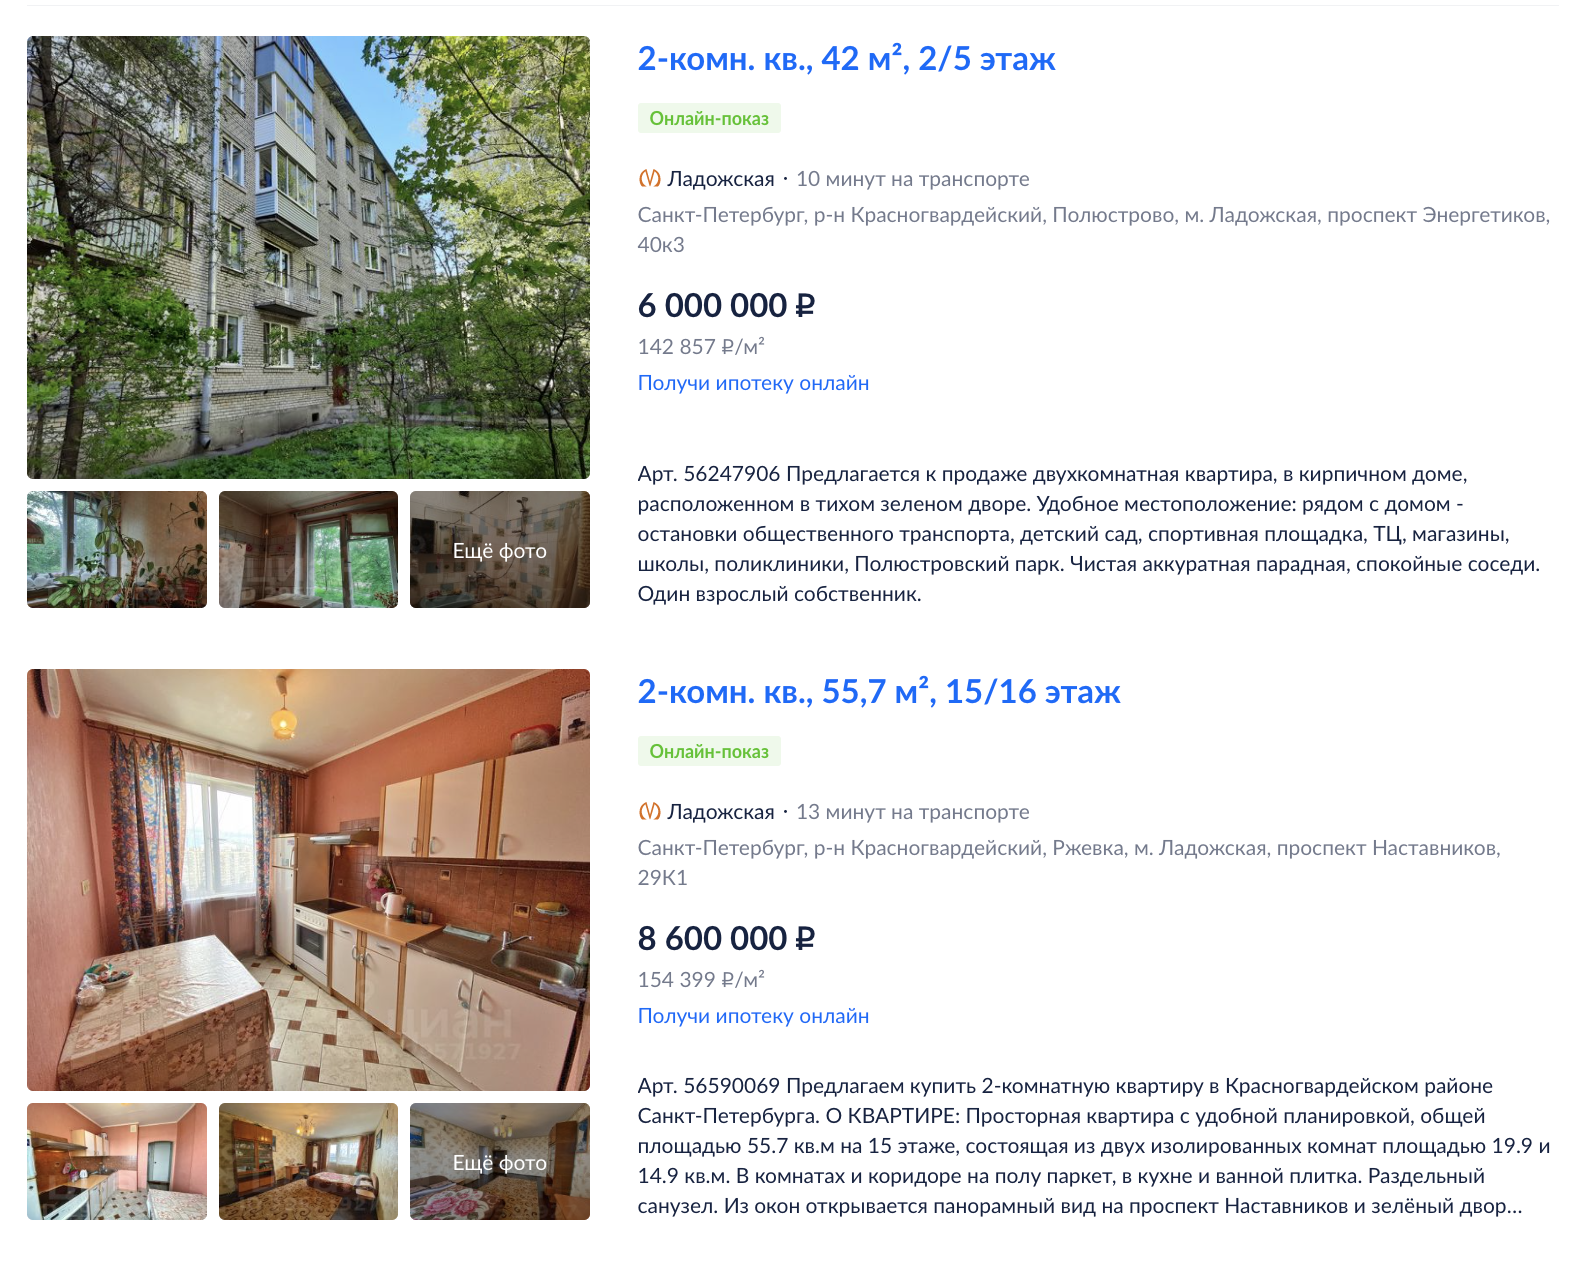 Цены на двухкомнатные квартиры в Красногвардейском районе. Источник: cian.ru